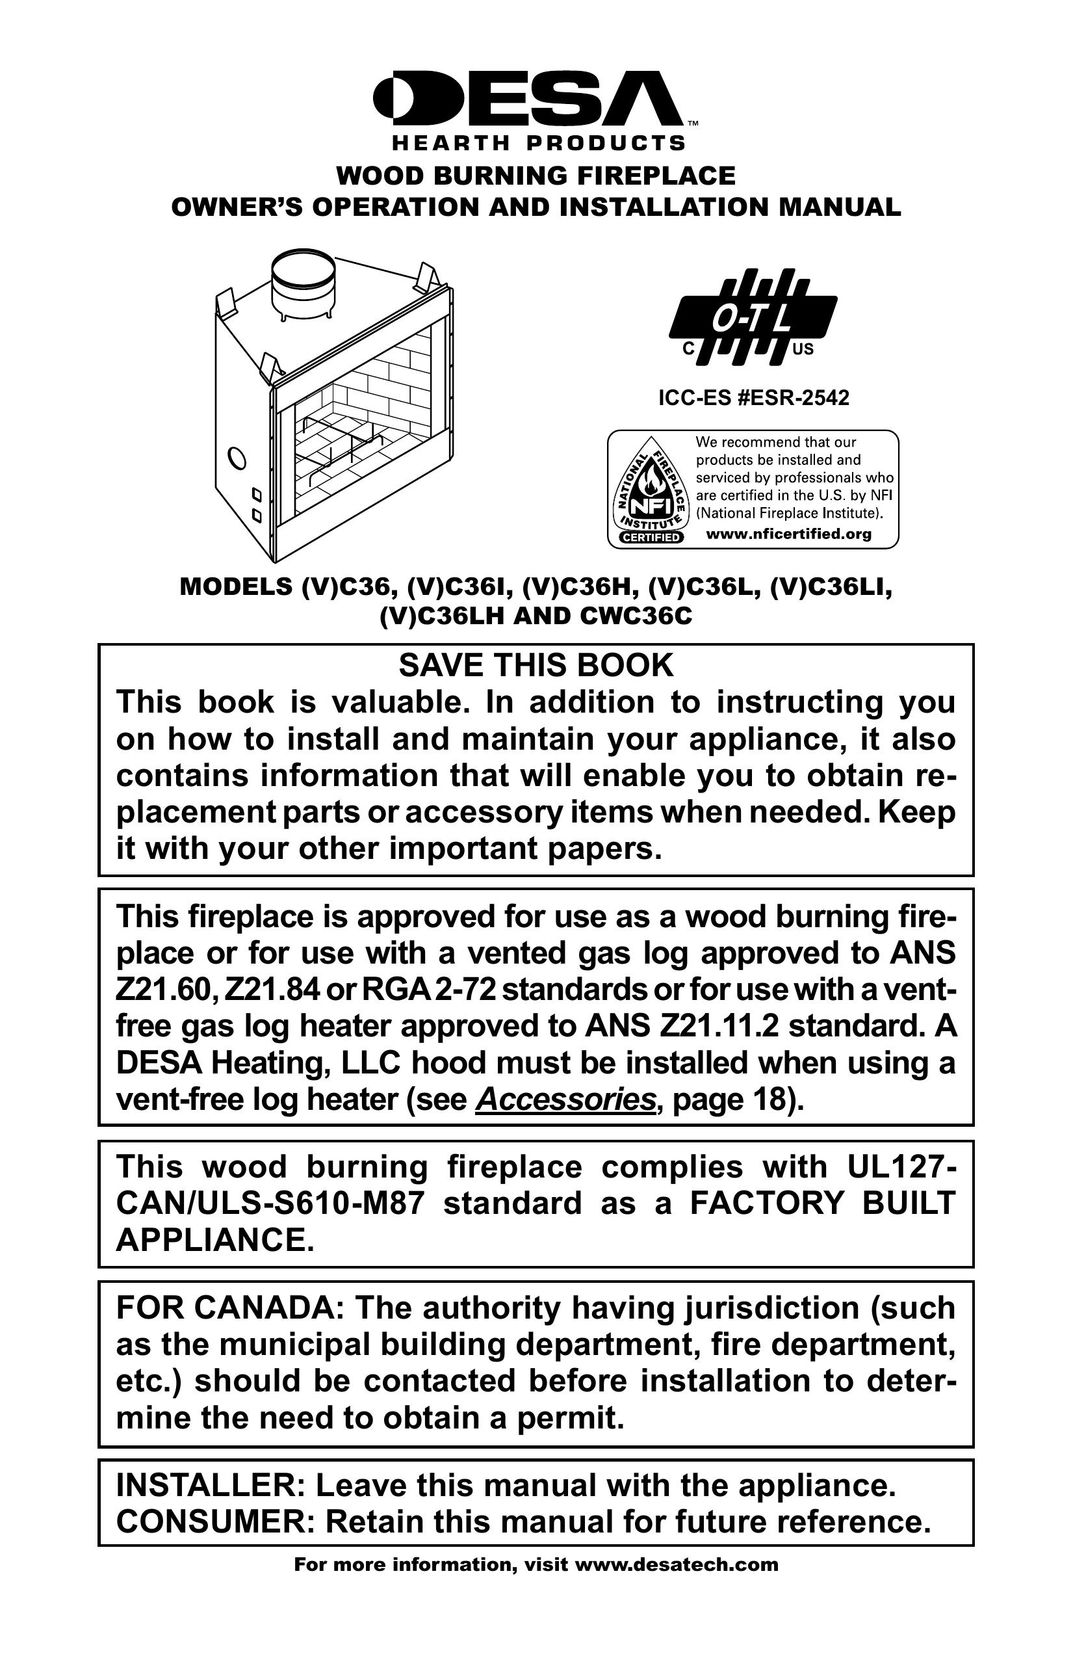 Desa (V)C36 Indoor Fireplace User Manual